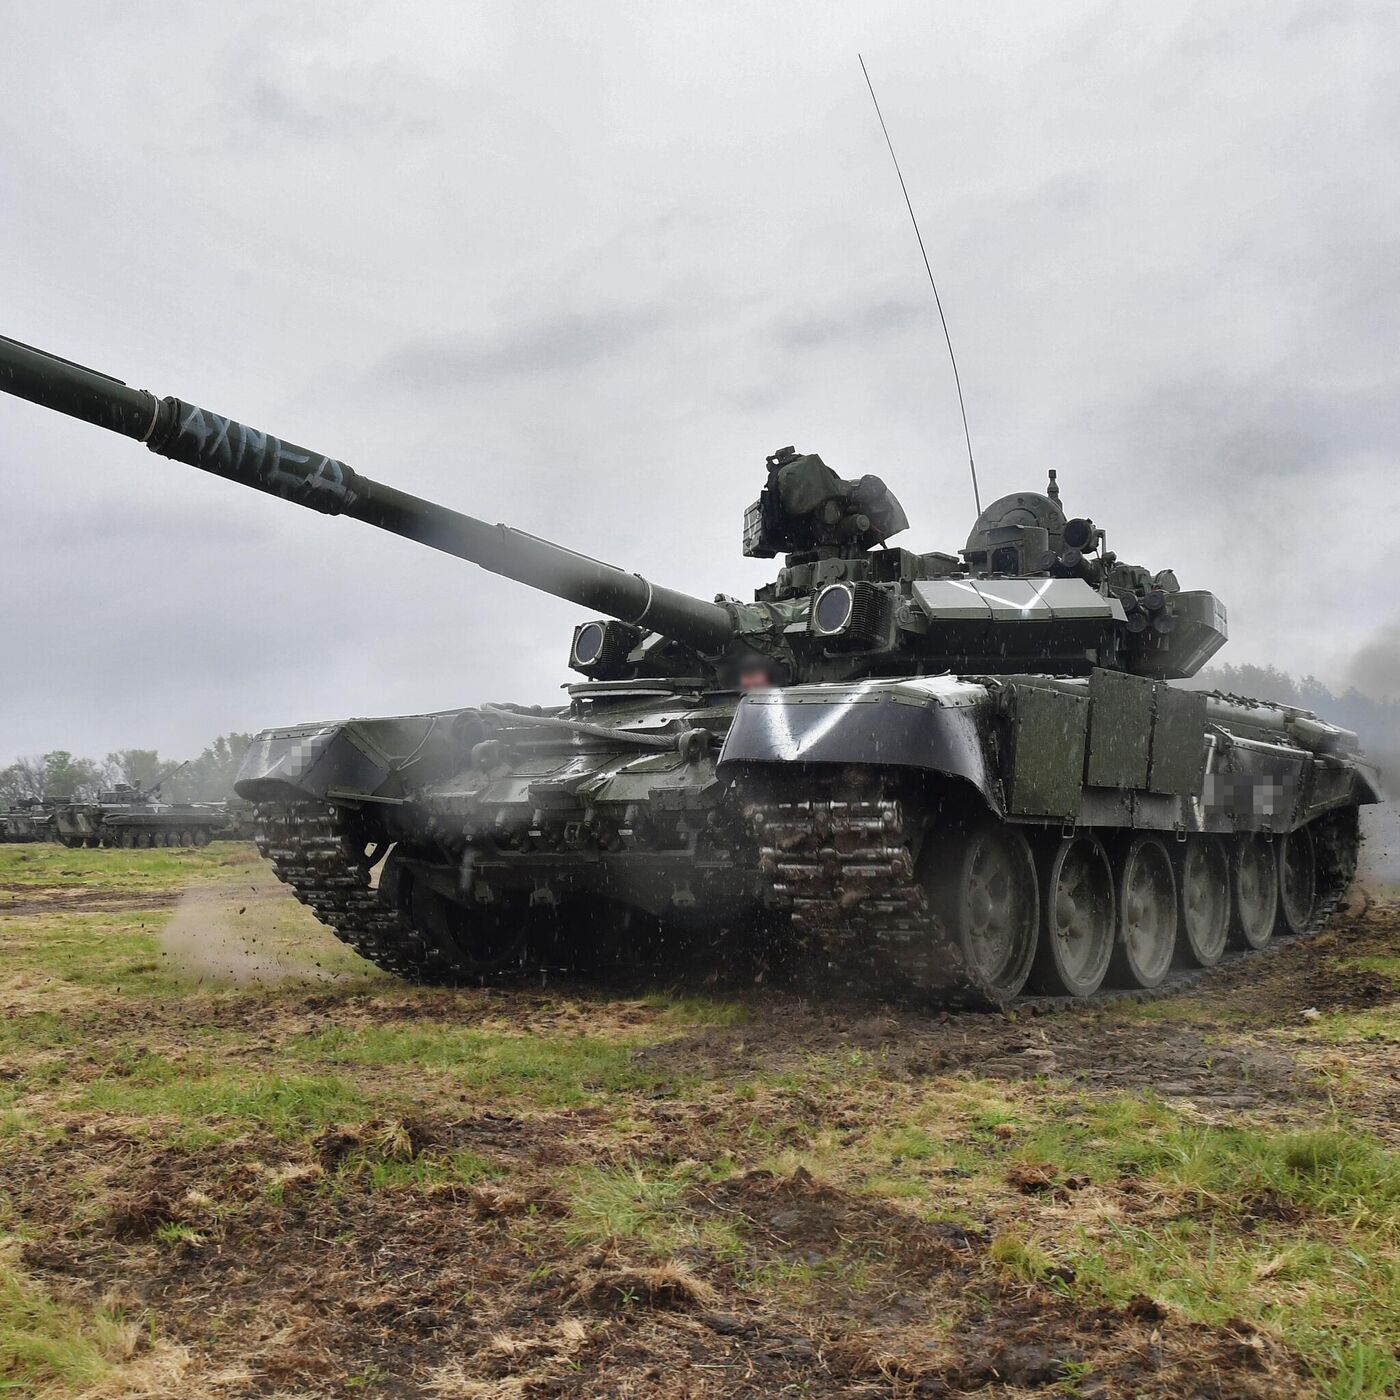 T-90M là một trong những loại xe tăng hiện đại và đắc nhất trên thế giới. Nếu bạn yêu thích vũ khí và quân đội, hãy xem hình ảnh của T-90M để hiểu rõ hơn về nó.